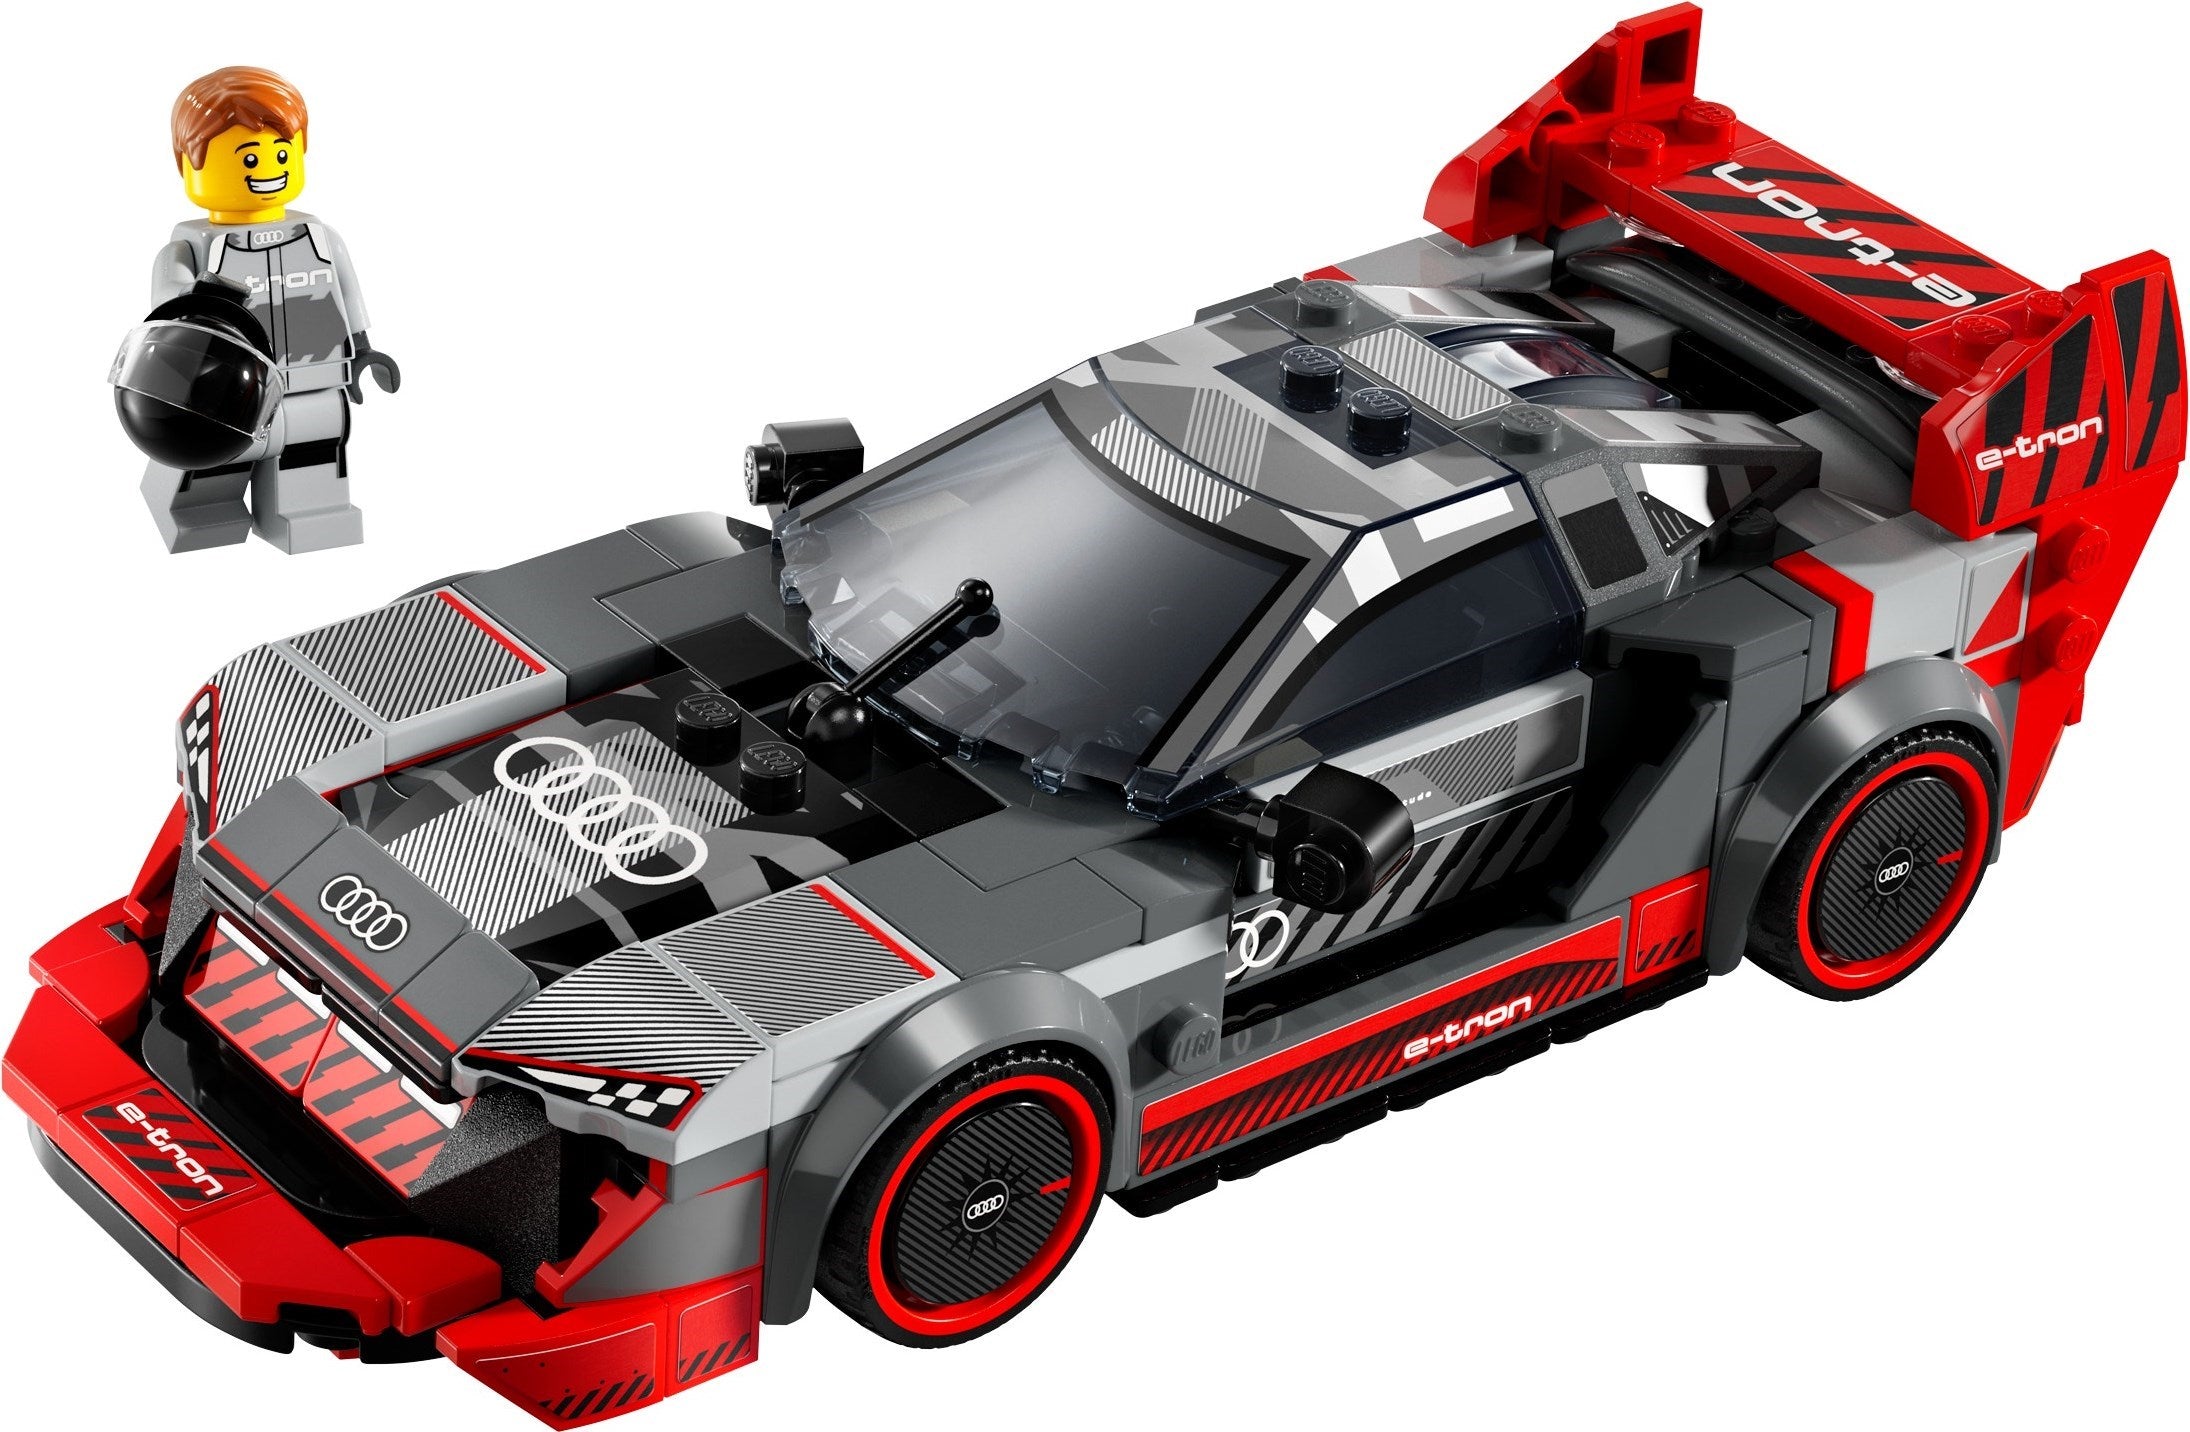 LEGO 76921 Audi S1 e-tron quattro